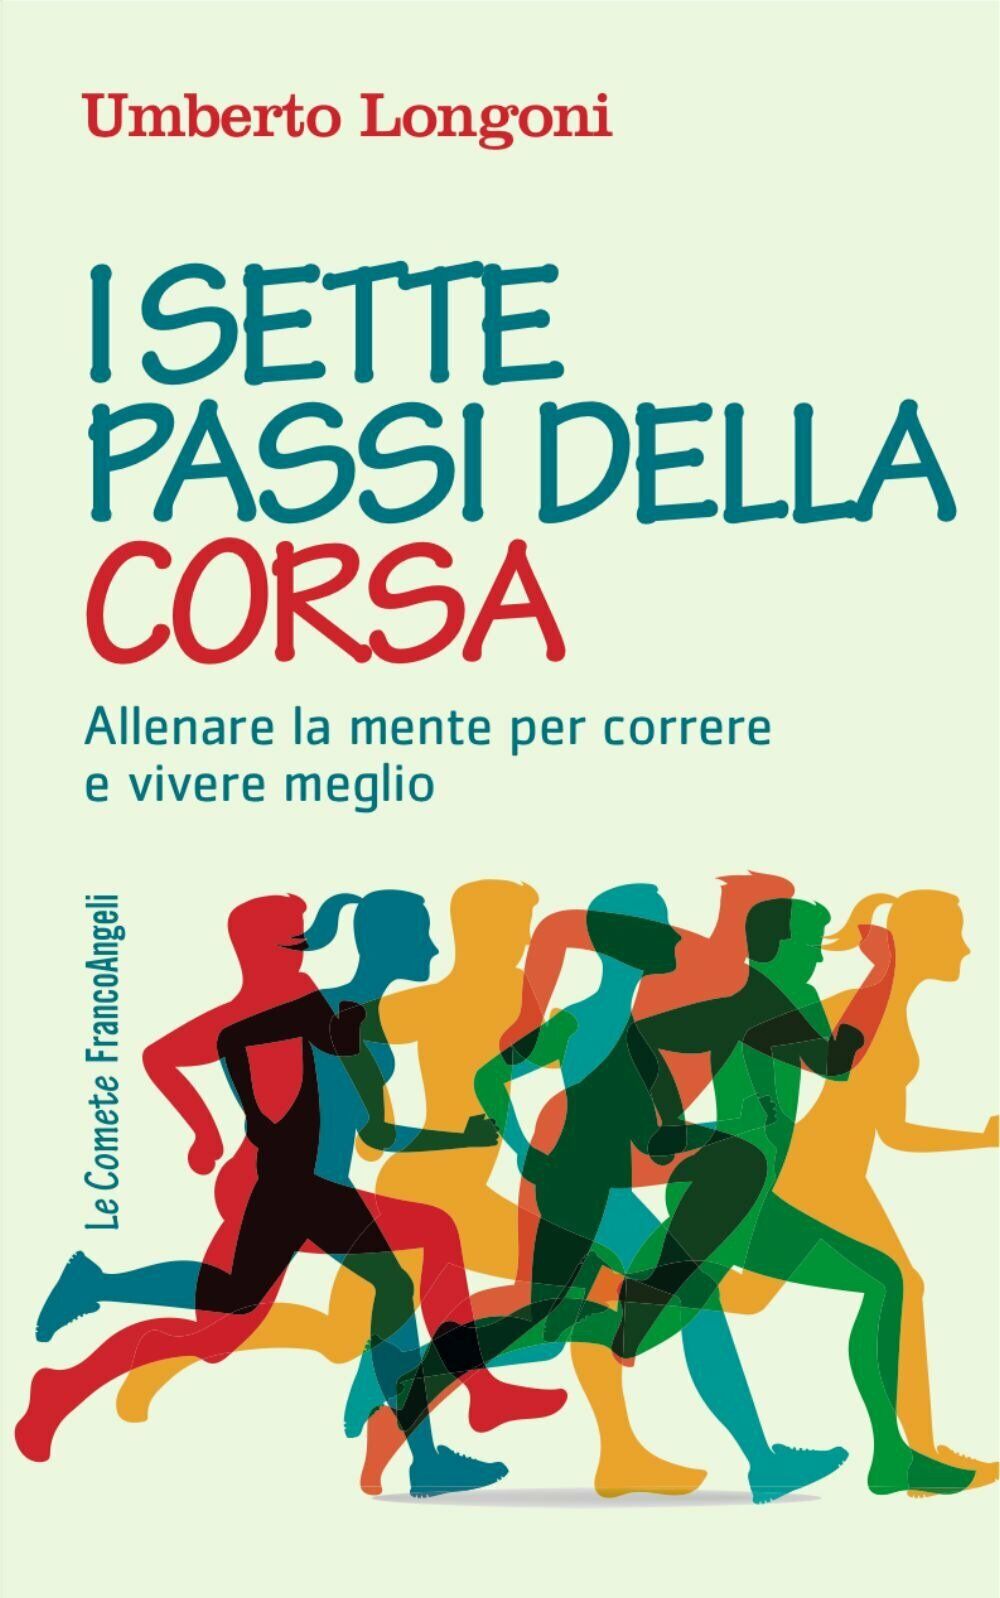 I sette passi della corsa - Umberto Longoni - Franco angeli, 2017 libro usato